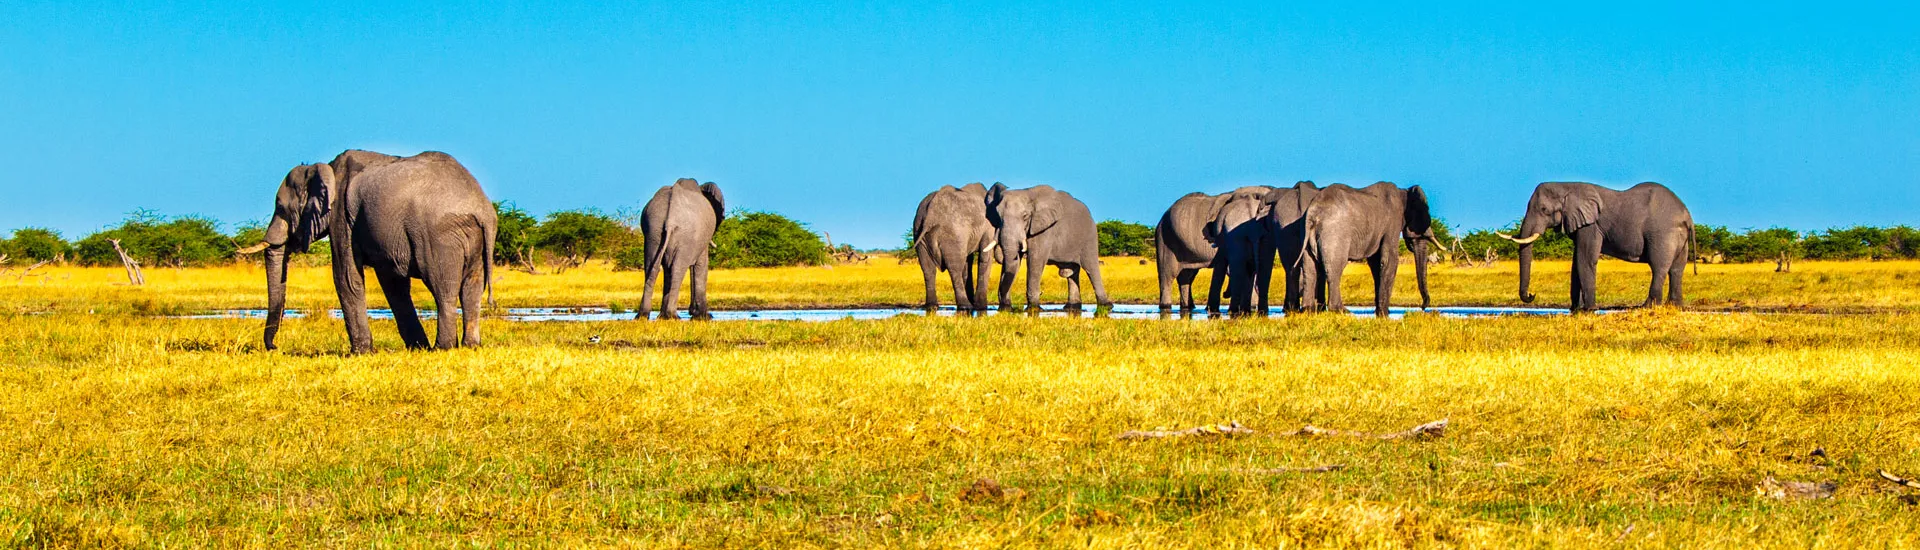 Afrikanischer Elefanten in National Park